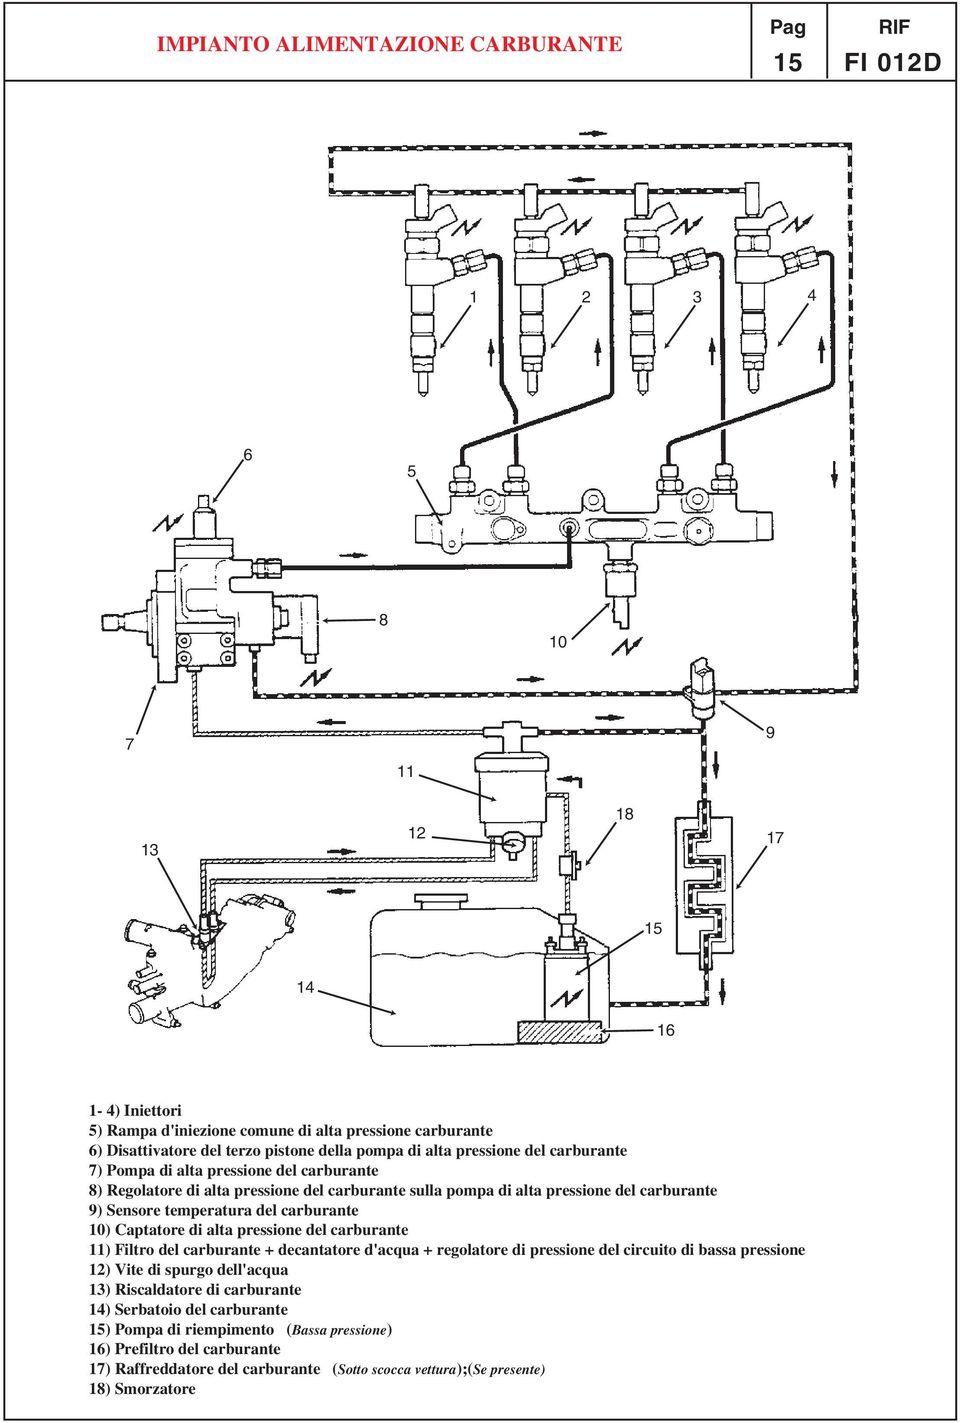 Captatore di alta pressione del carburante ) Filtro del carburante + decantatore d'acqua + regolatore di pressione del circuito di bassa pressione ) Vite di spurgo dell'acqua )